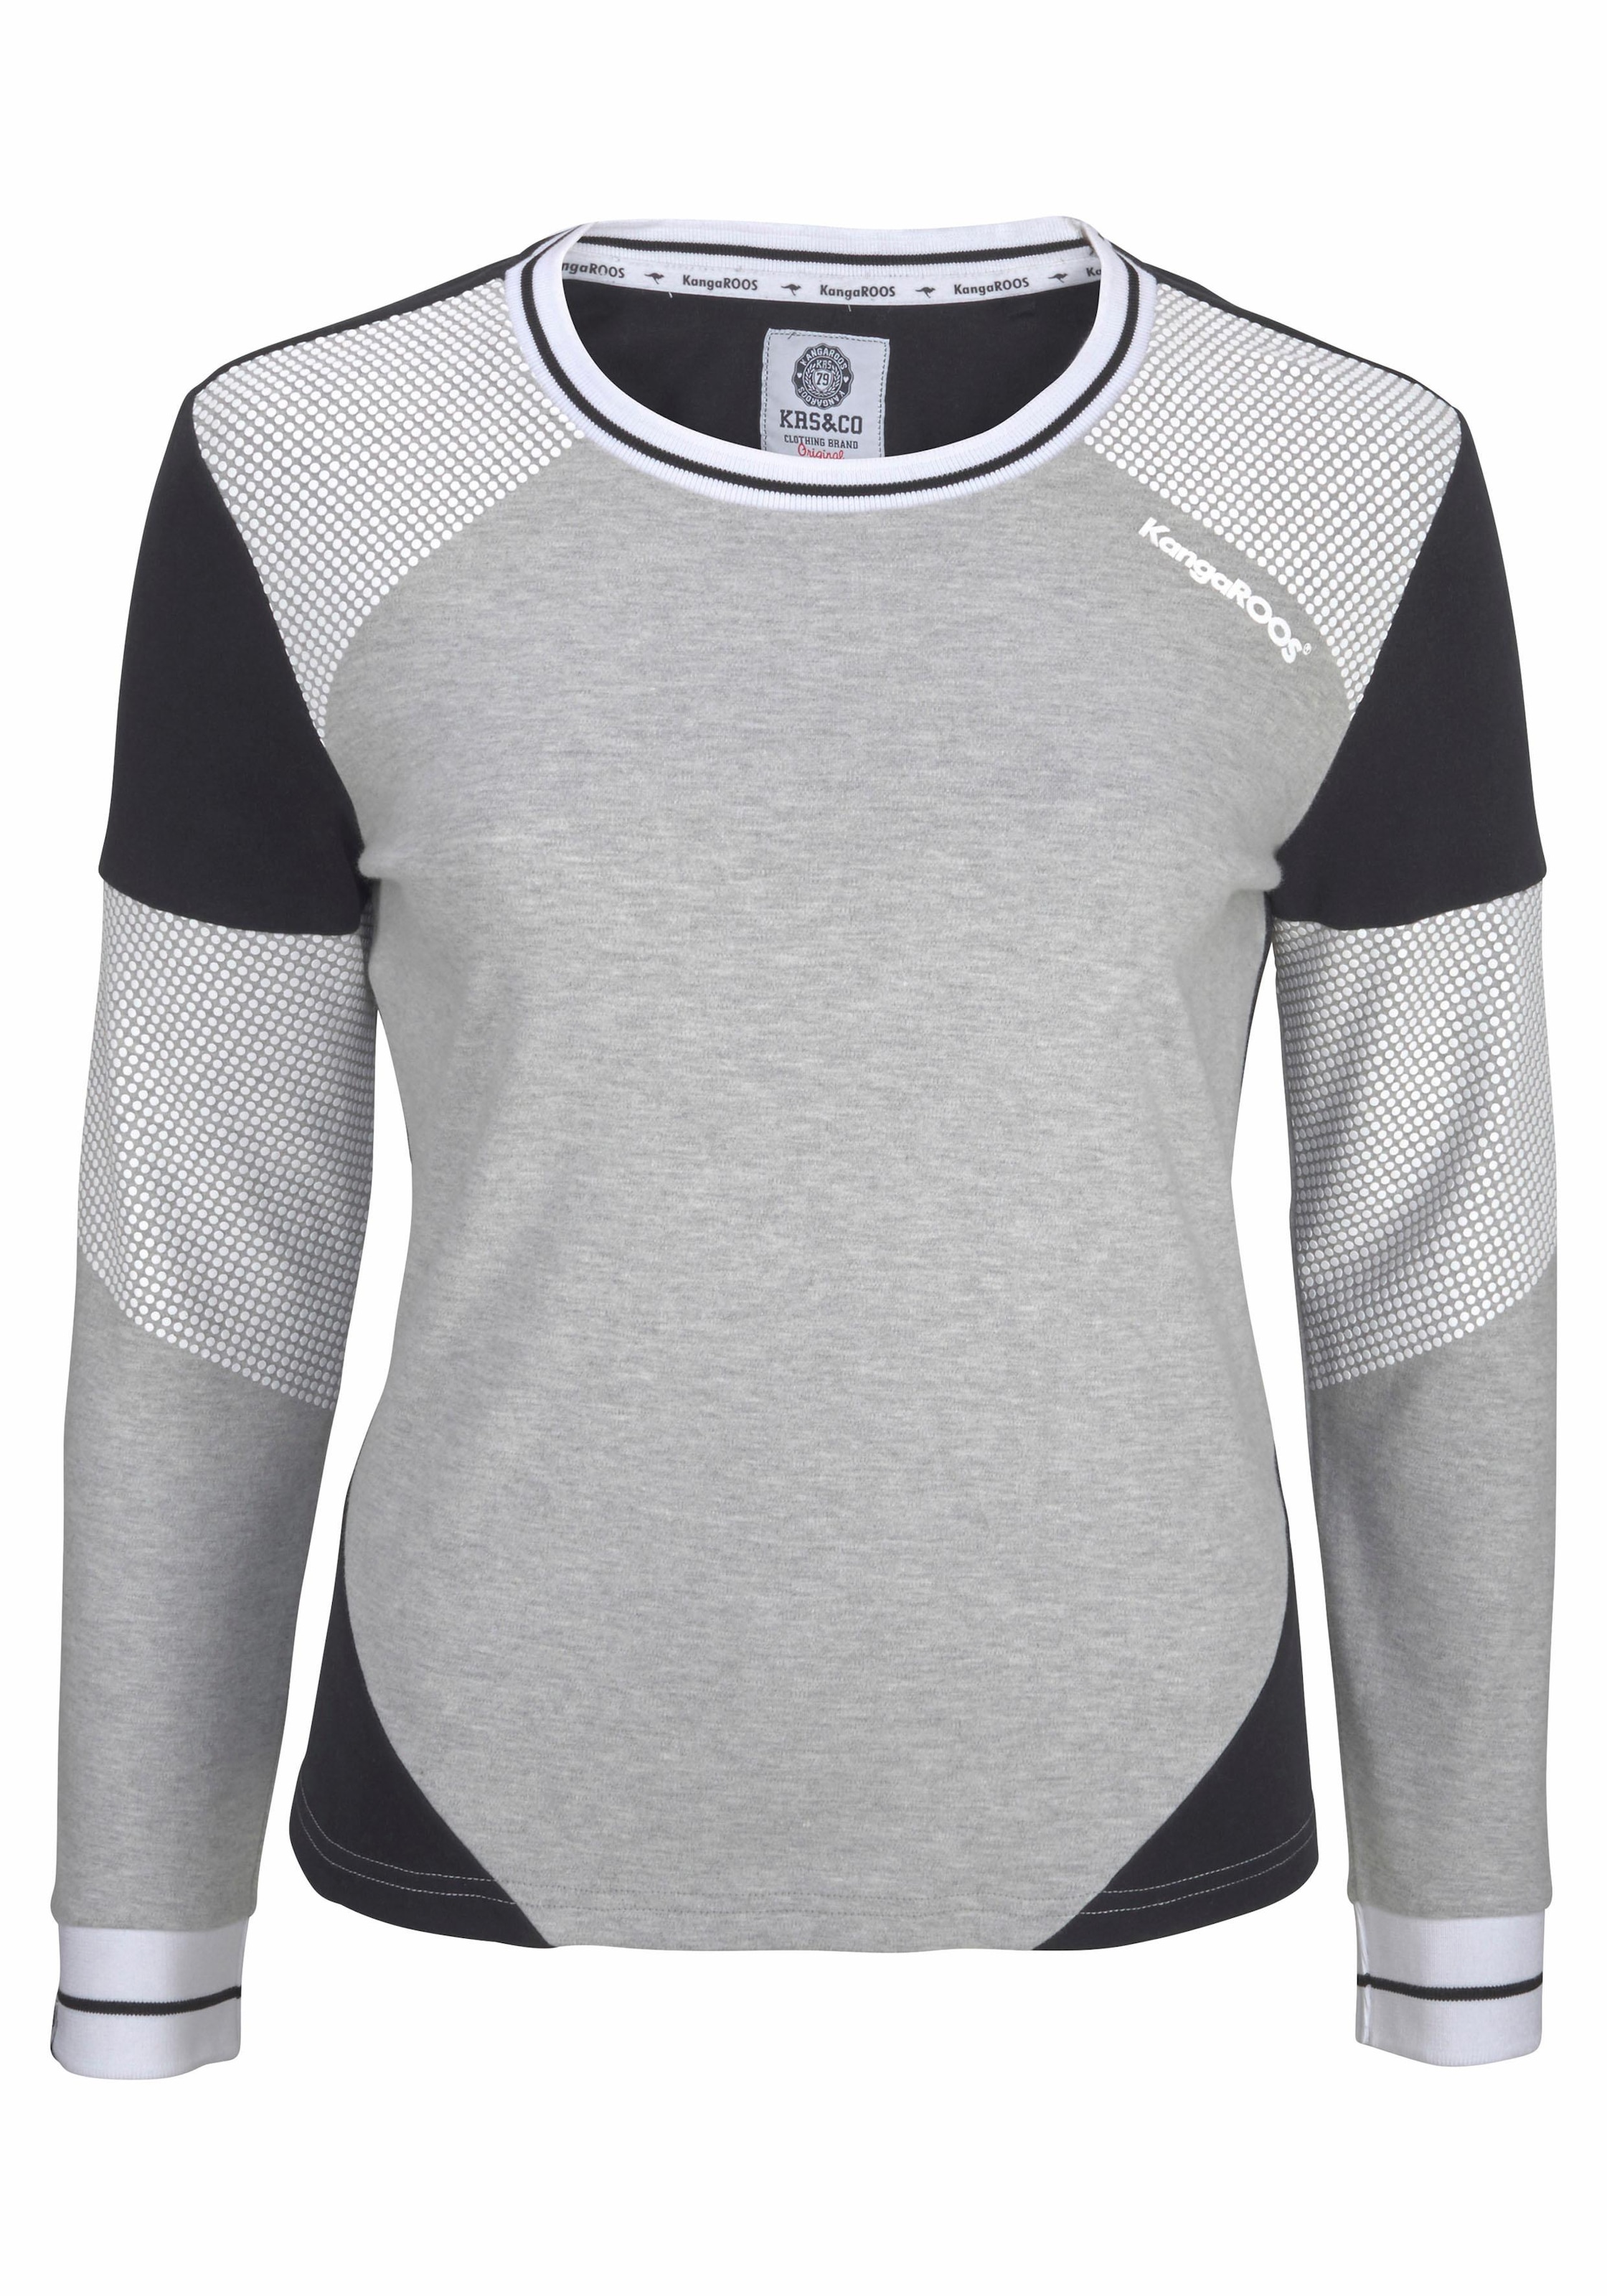 OTTO KangaROOS Online Sweatshirt, im Colorblocking-Design mit im Pünktchen Shop